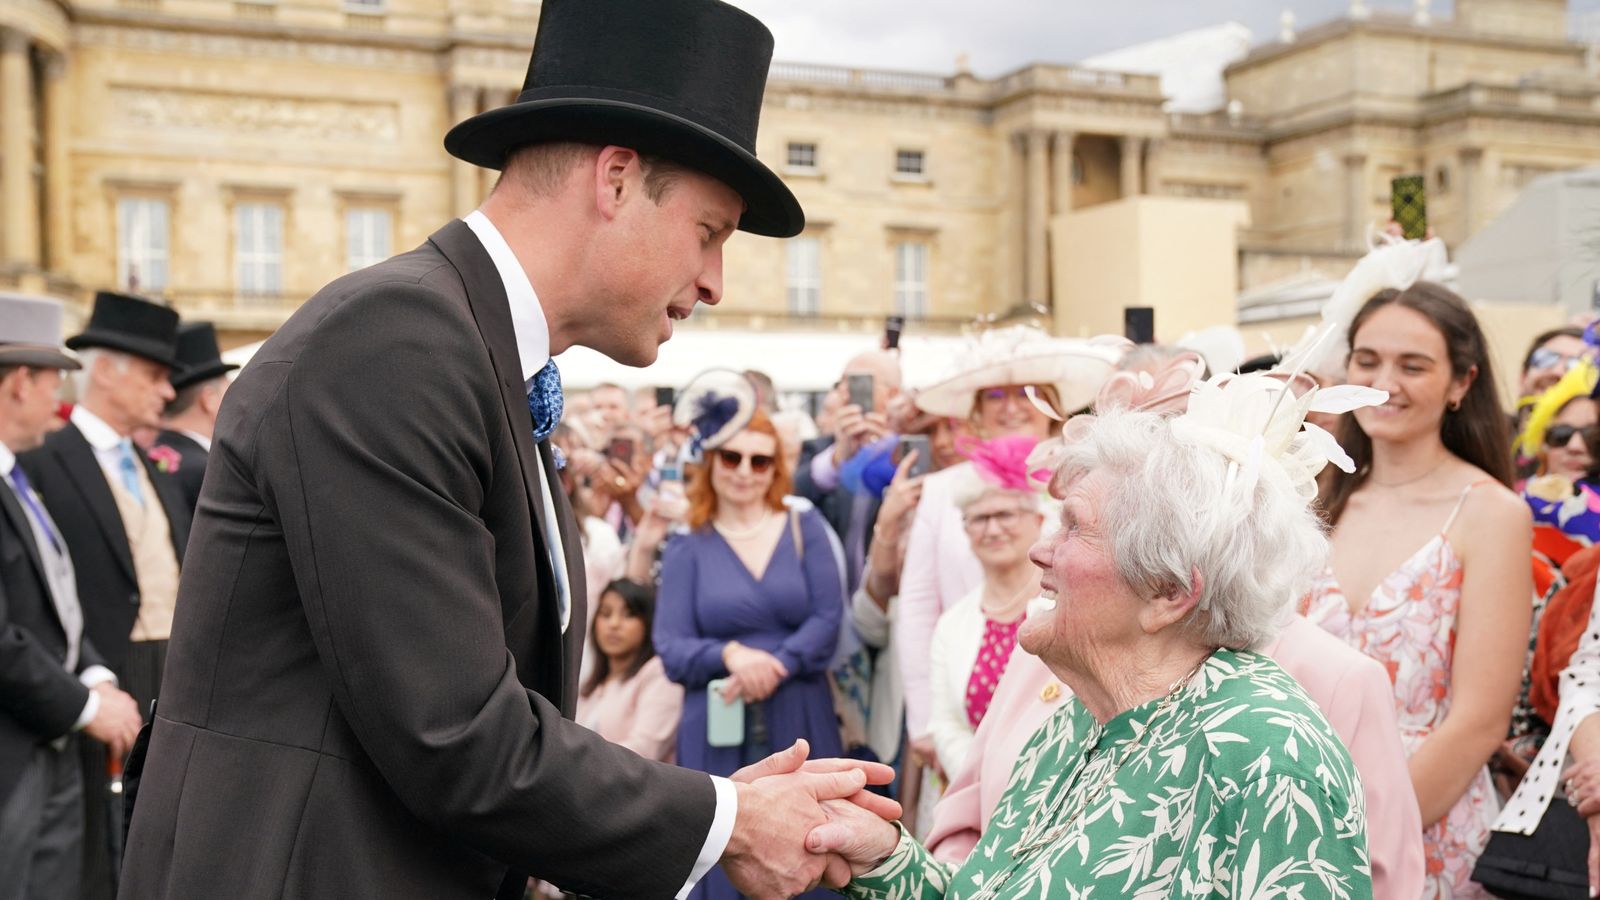 Тысячи людей посещают вечеринку в саду Букингемского дворца, где 93-летний гость ошеломляет принца Уильяма |  Новости Великобритании